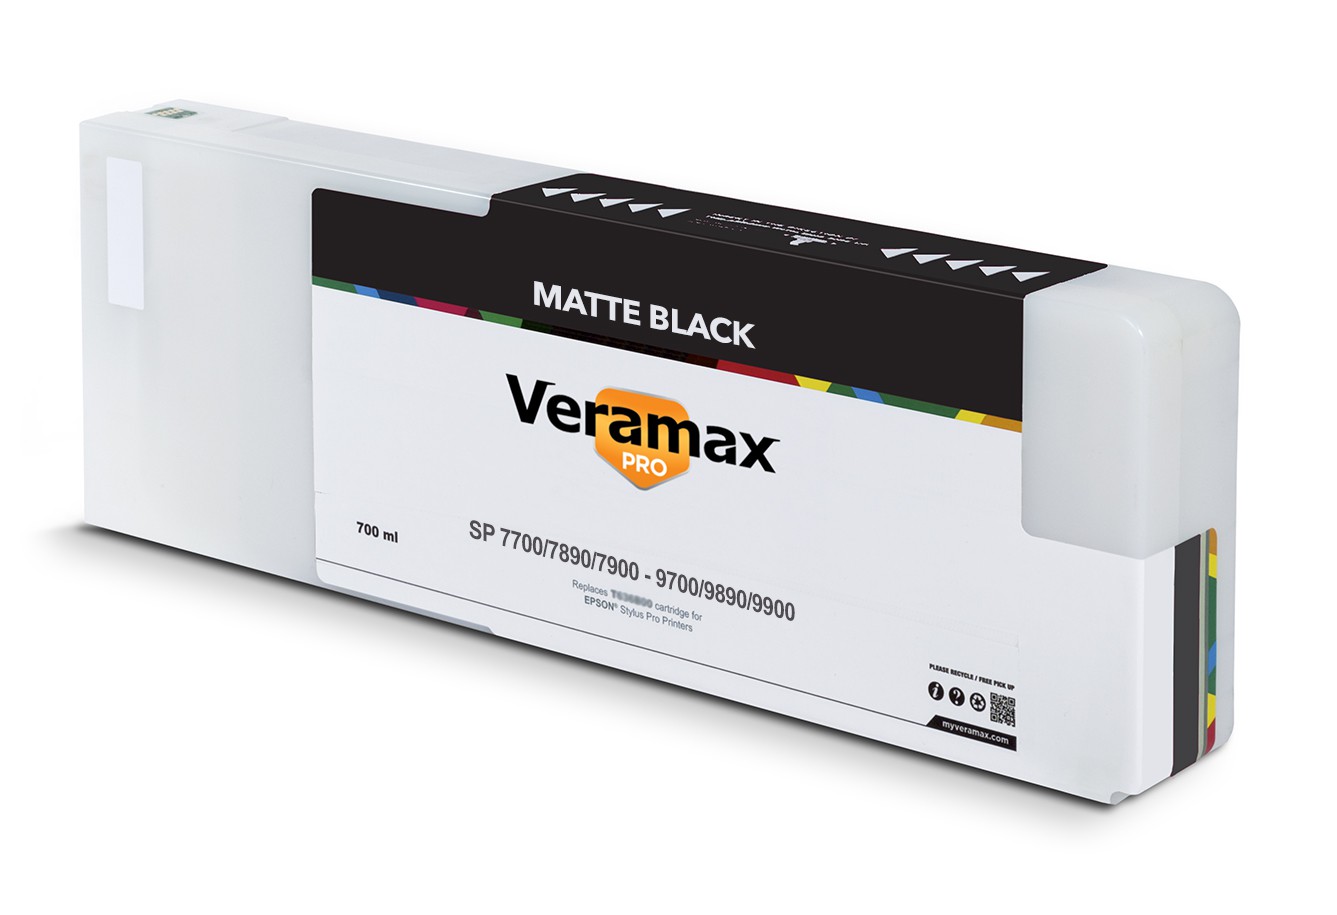 Veramax PRO SP 7700/9700 7890/9890 7900/9900 700ml Matte Black